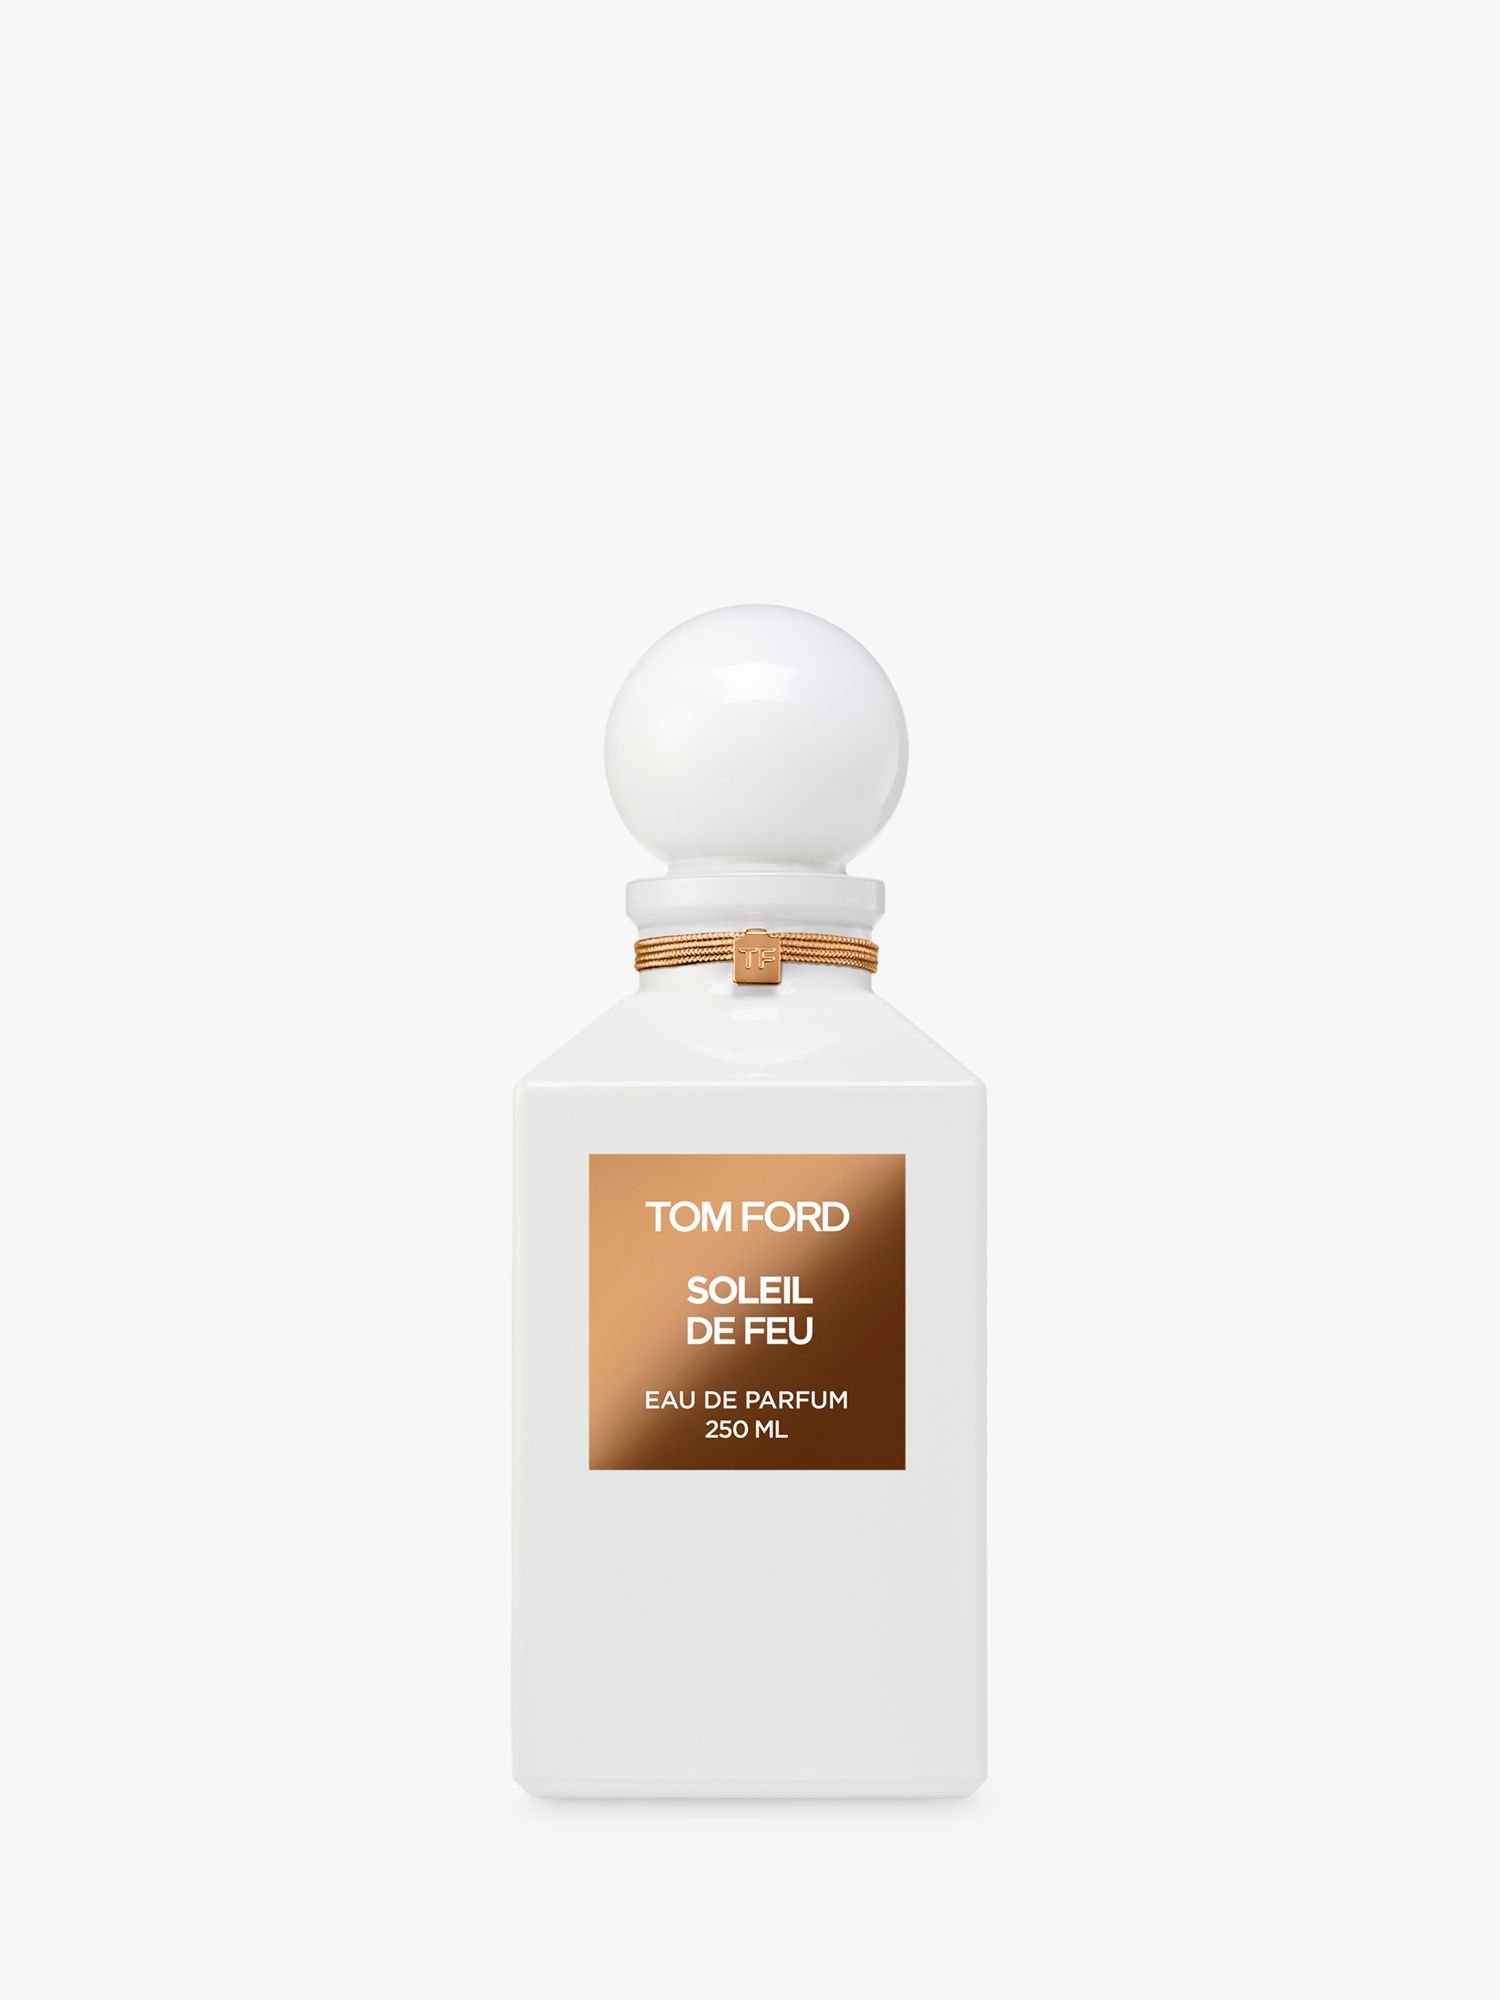 TOM FORD Soleil De Feu Eau de Parfum, 250ml at John Lewis & Partners